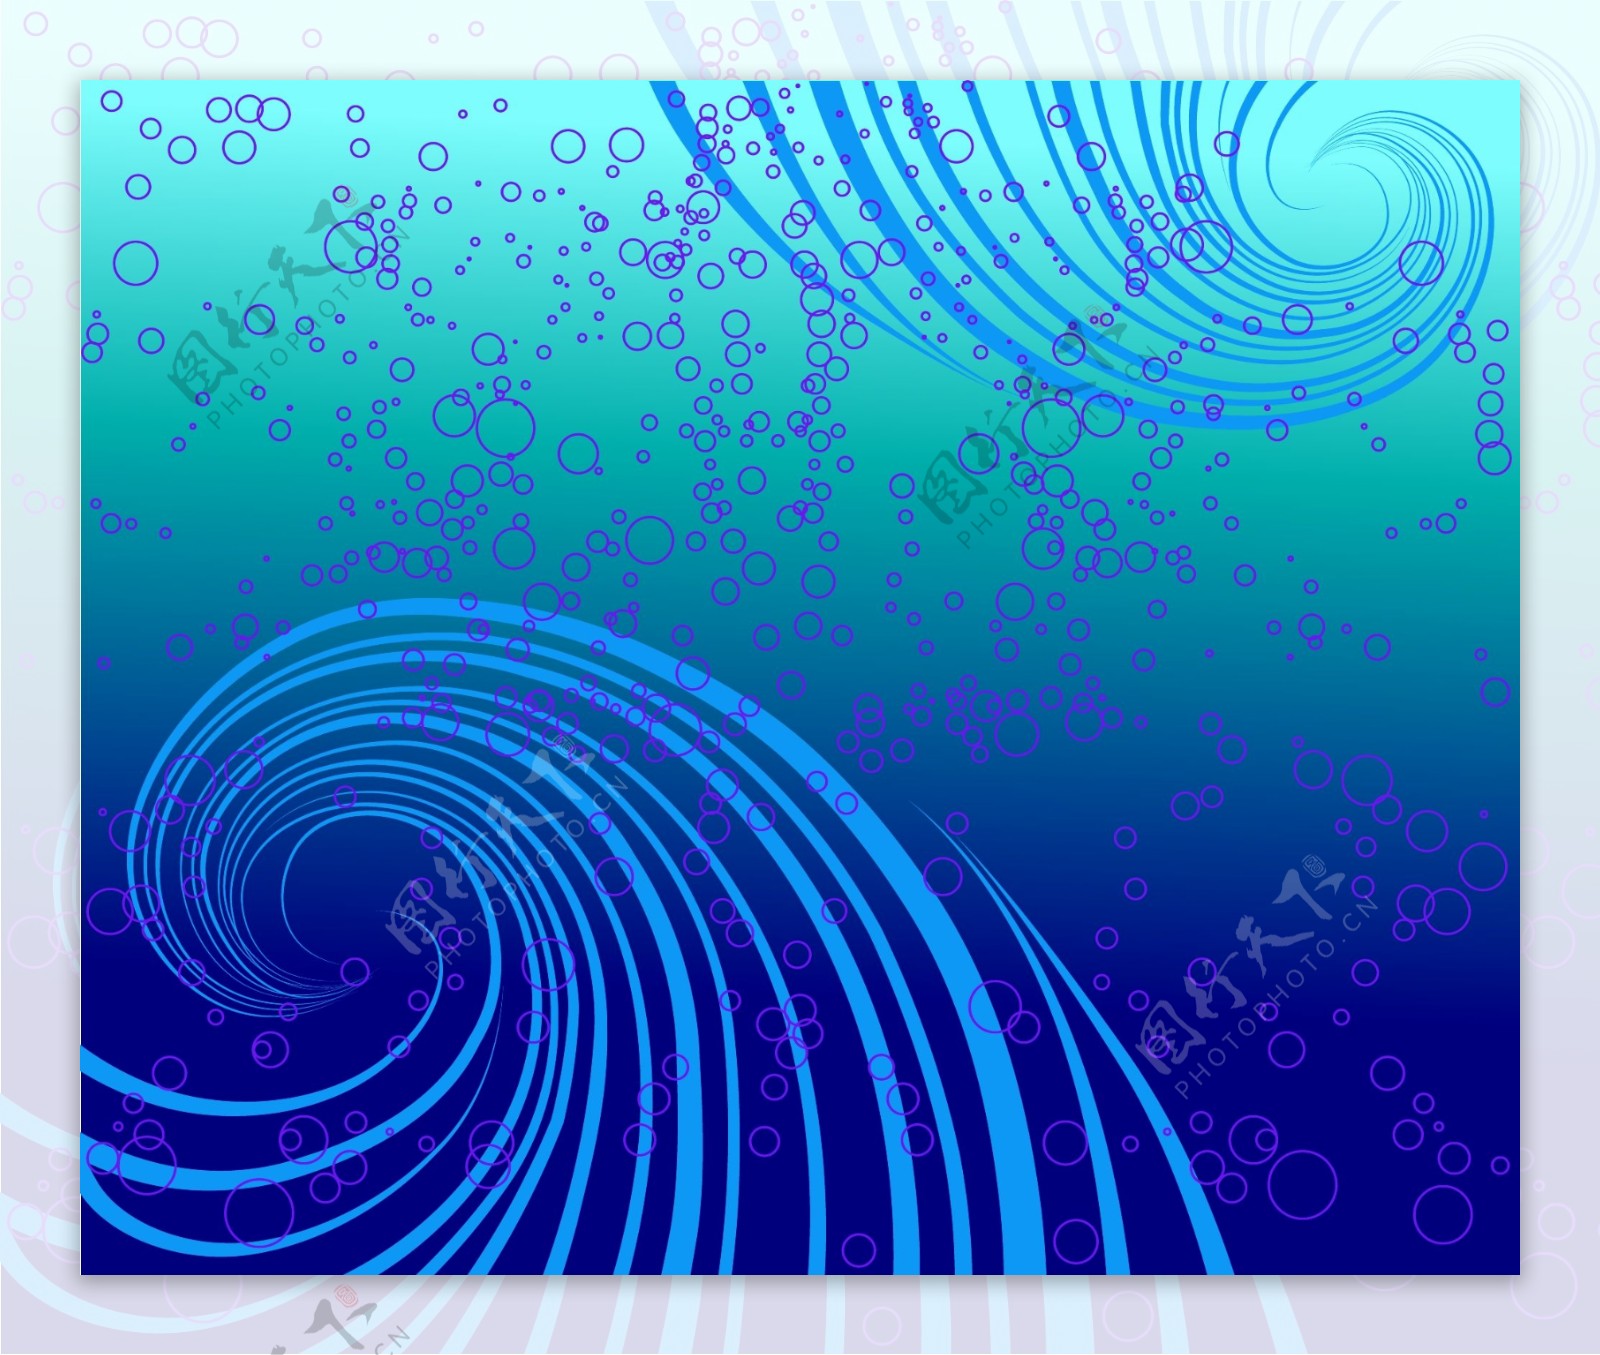 一个蓝色漩涡的视觉效果和泡泡背景矢量素材